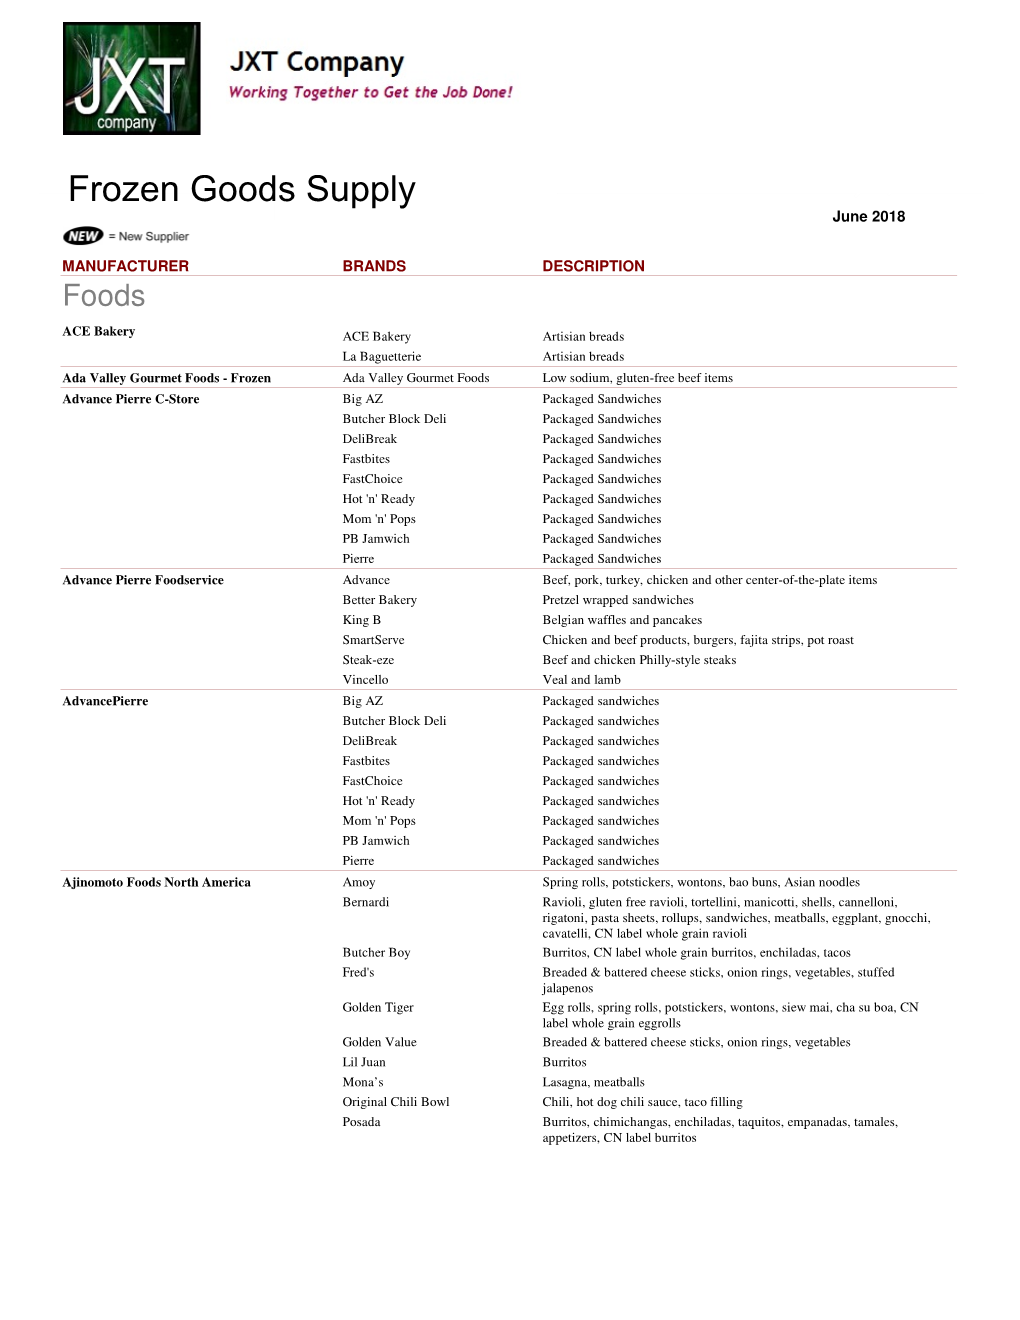 Frozen Supplier Lineup